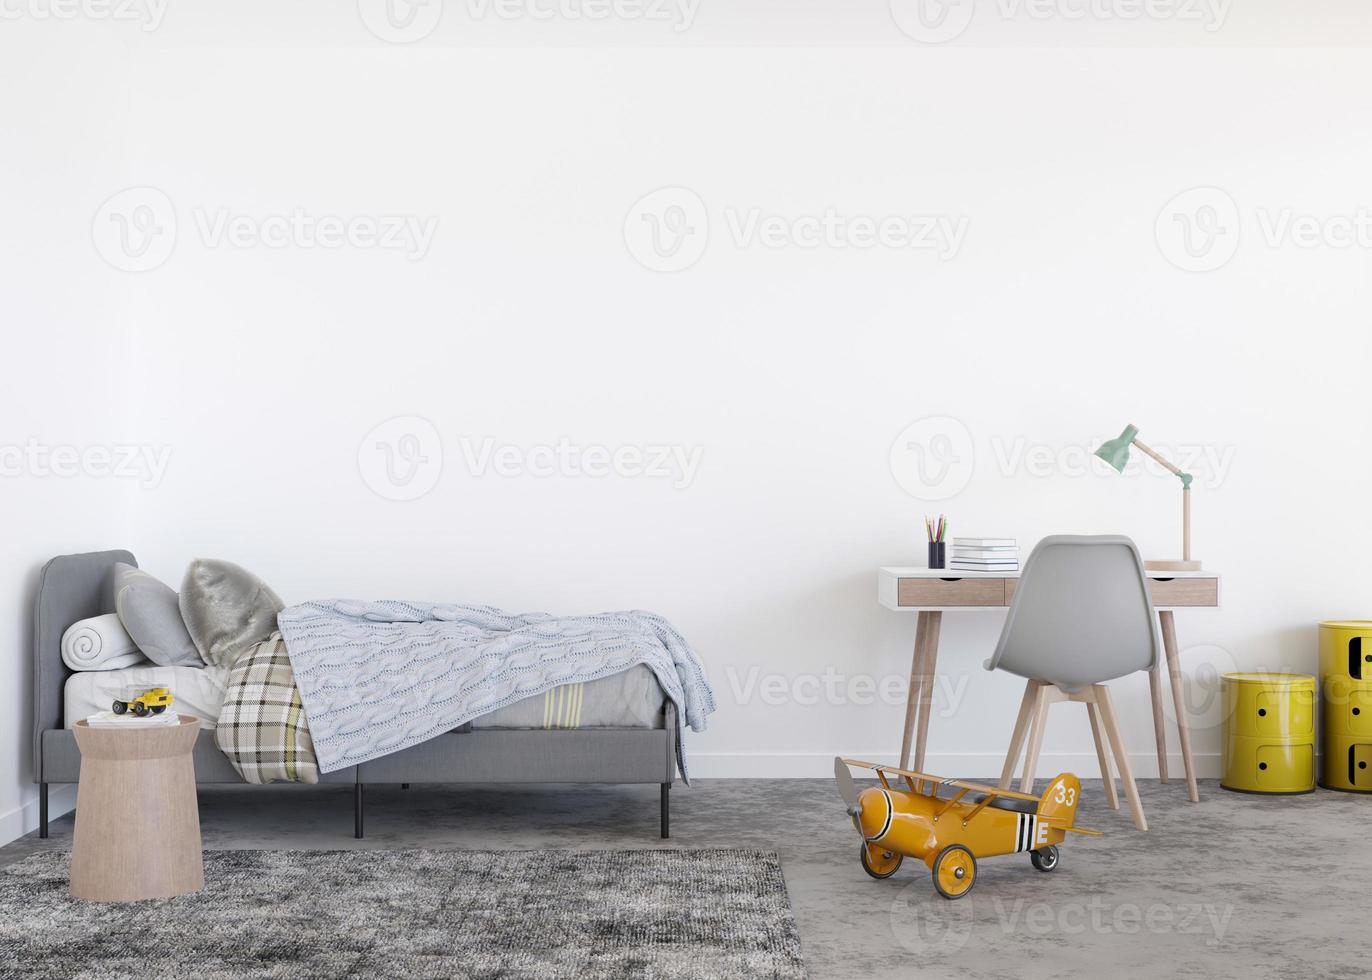 parede branca vazia no quarto de criança moderno. mock up interior em estilo escandinavo contemporâneo. copie o espaço para sua foto ou cartaz. cama, mesa, brinquedos. quarto aconchegante para crianças. renderização 3D.